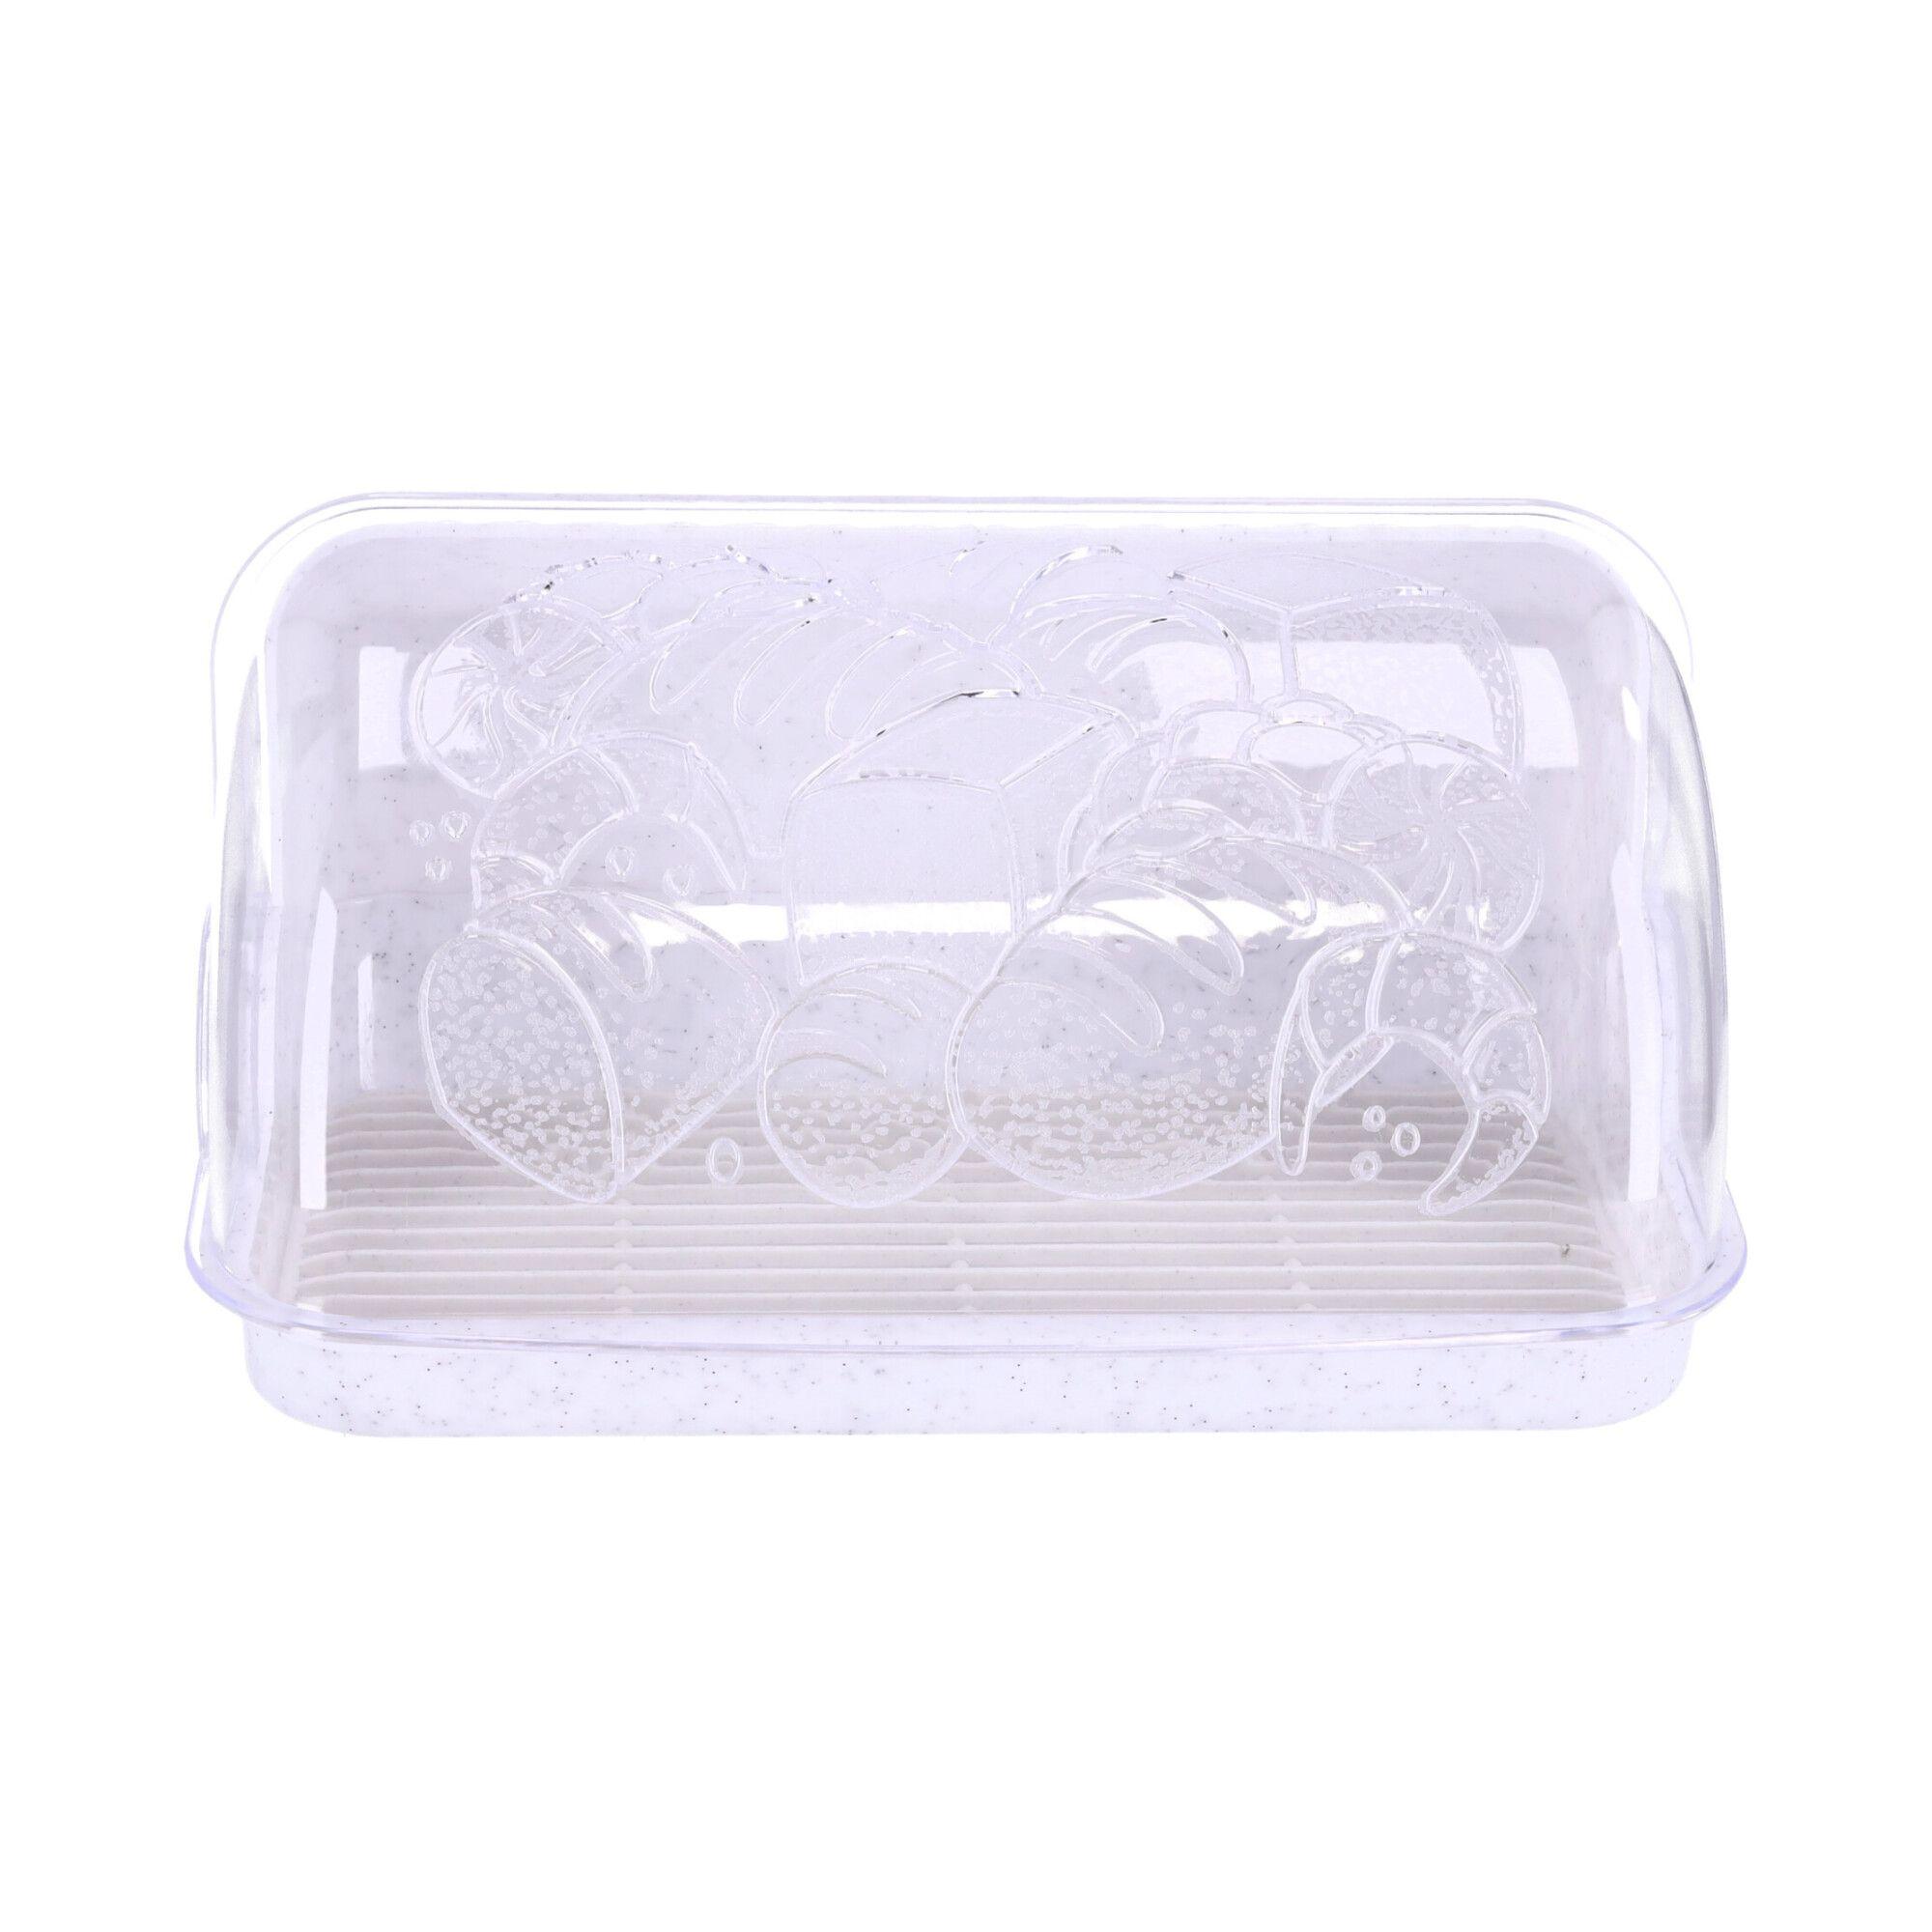 Plastic bread box, bread container, size 42x27x18 cm, POLISH PRODUCT